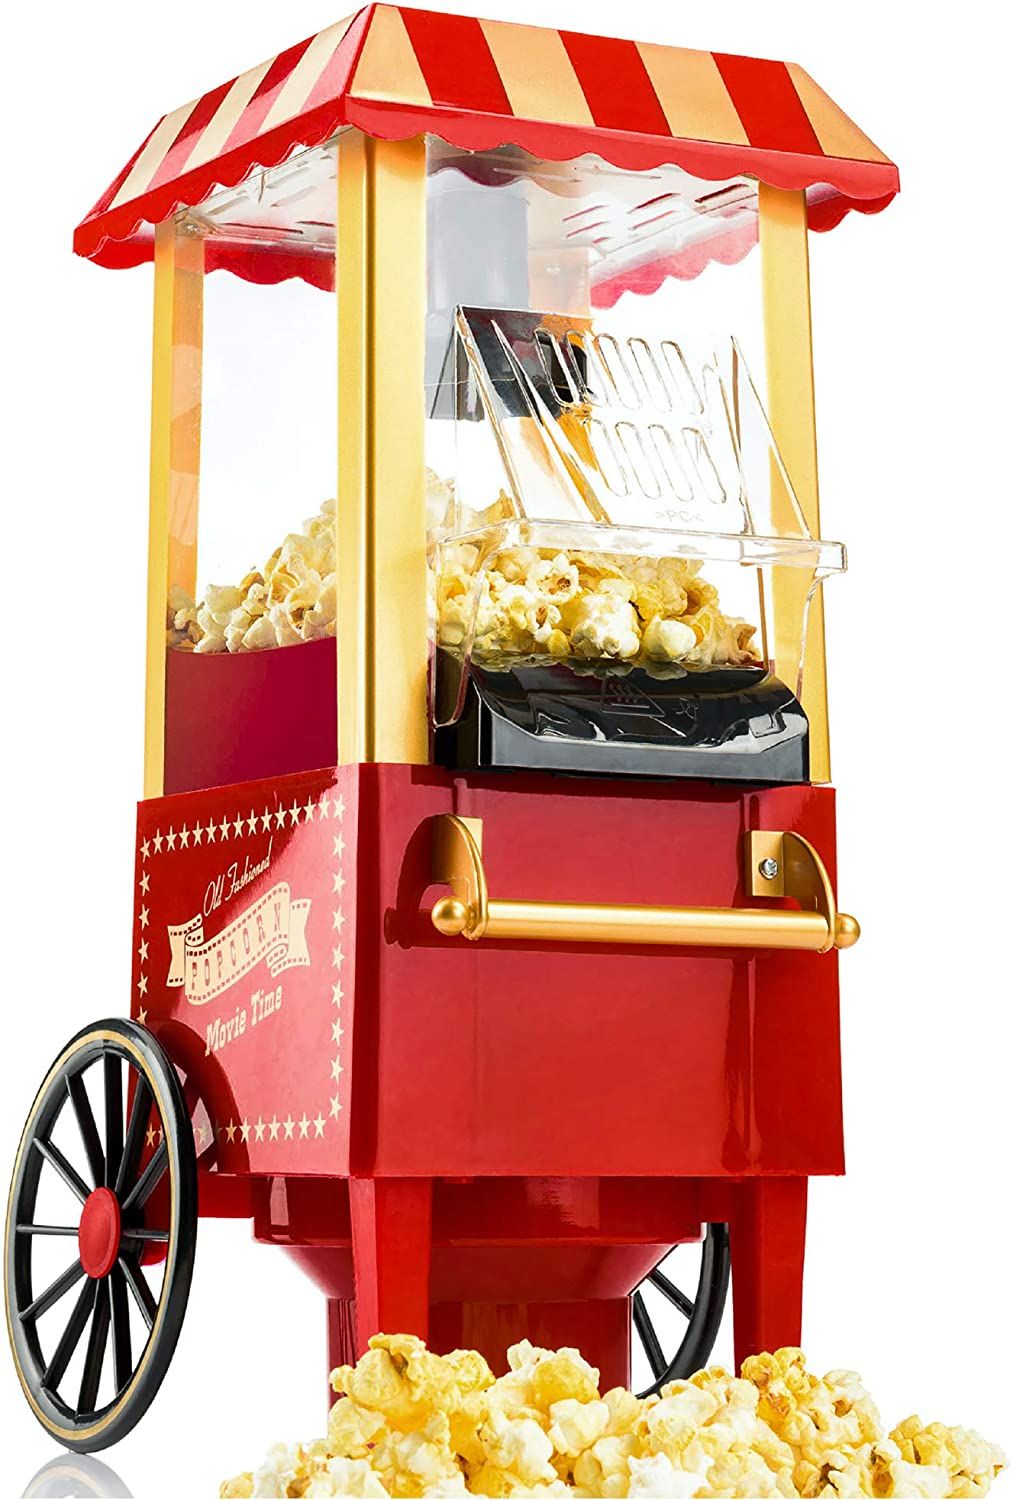 miglior macchina popcorn